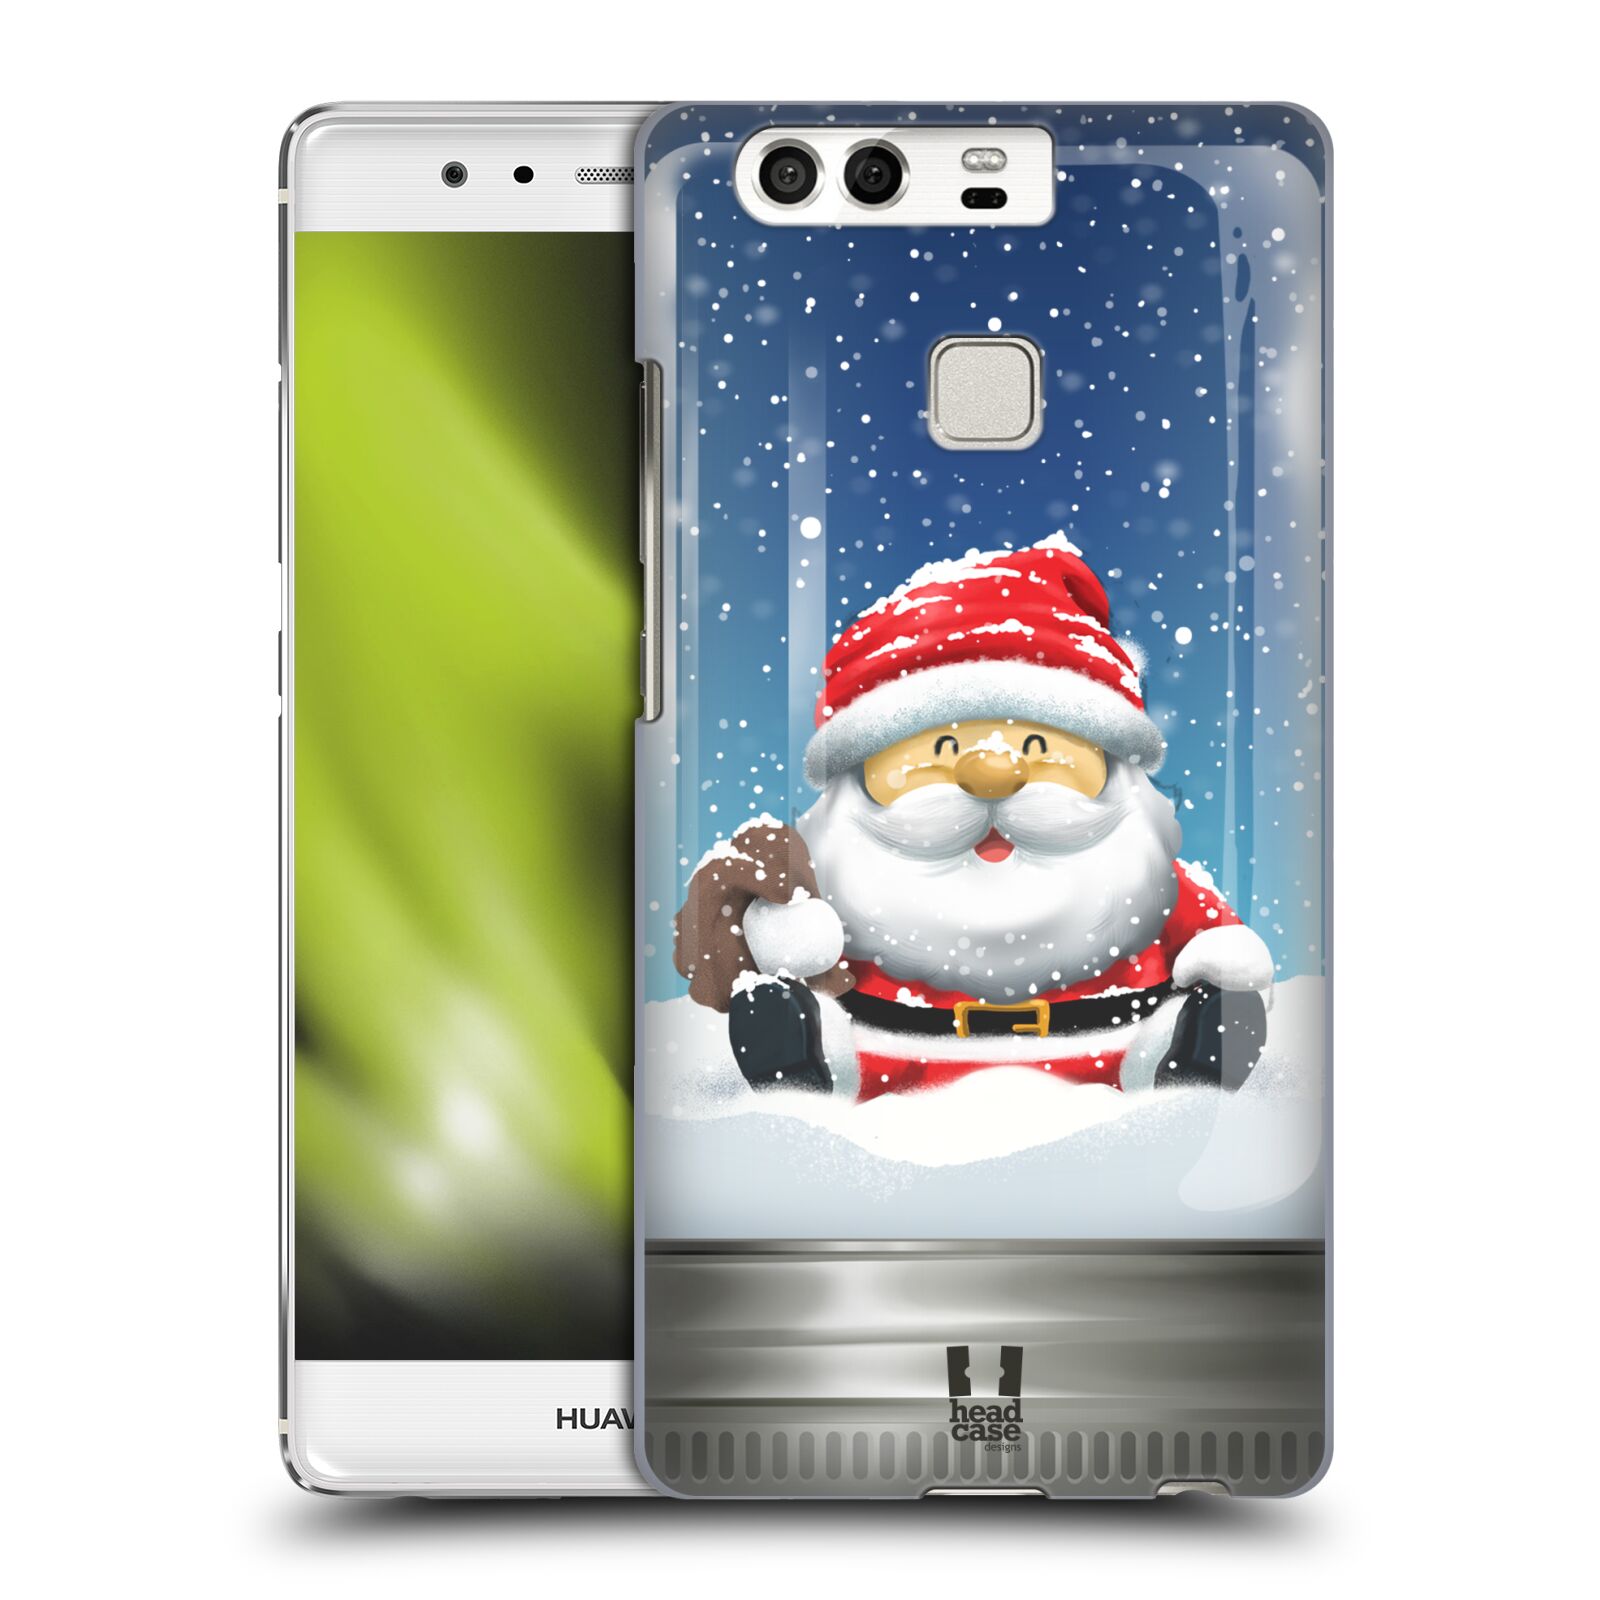 HEAD CASE plastový obal na mobil Huawei P9 / P9 DUAL SIM vzor Vánoce v těžítku SANTA